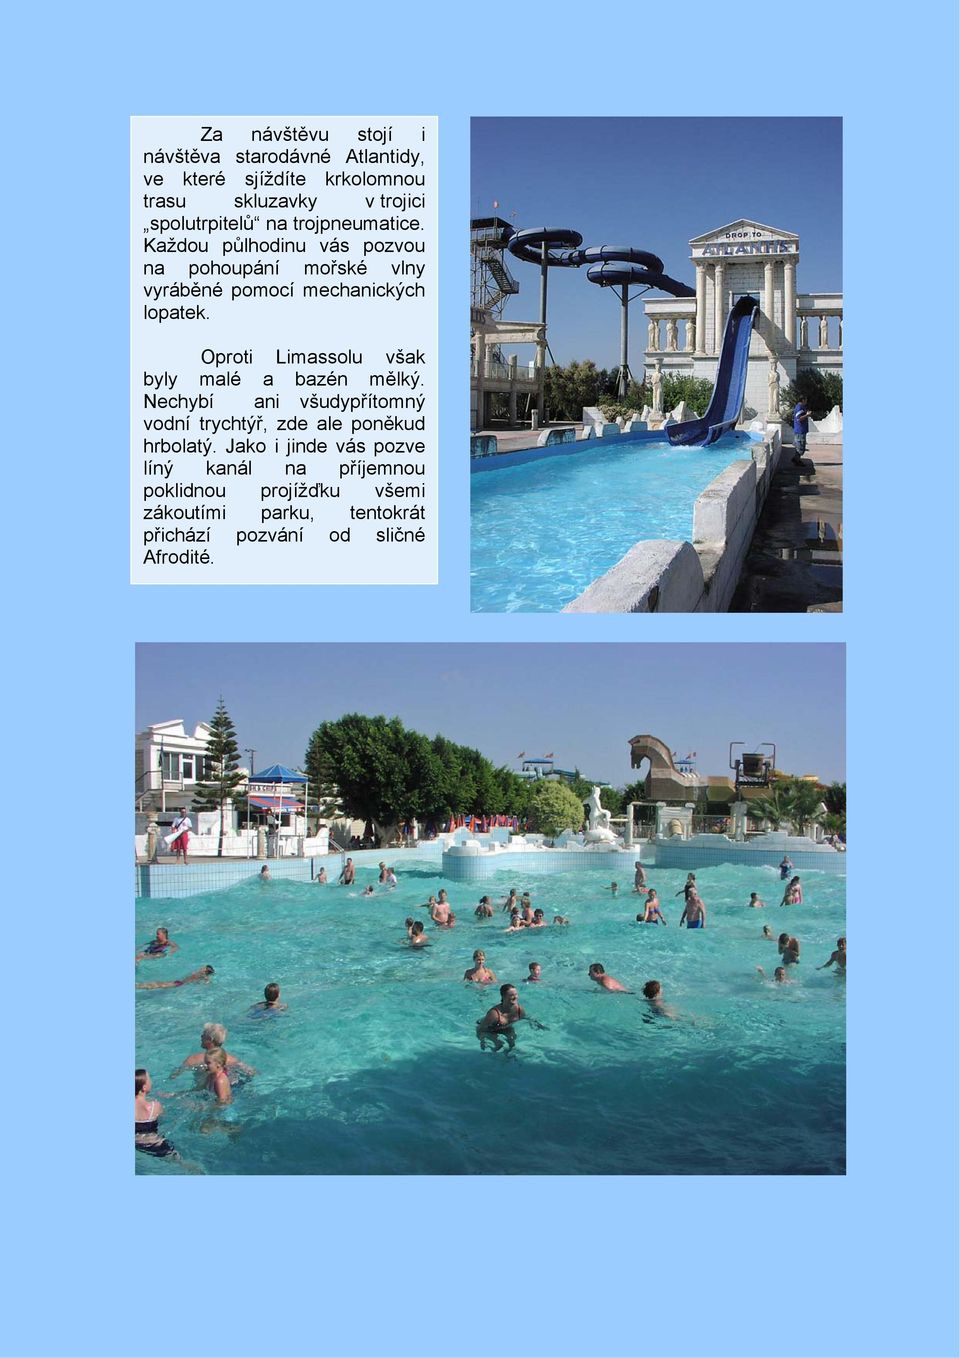 Oproti Limassolu však byly malé a bazén mělký. Nechybí ani všudypřítomný vodní trychtýř, zde ale poněkud hrbolatý.